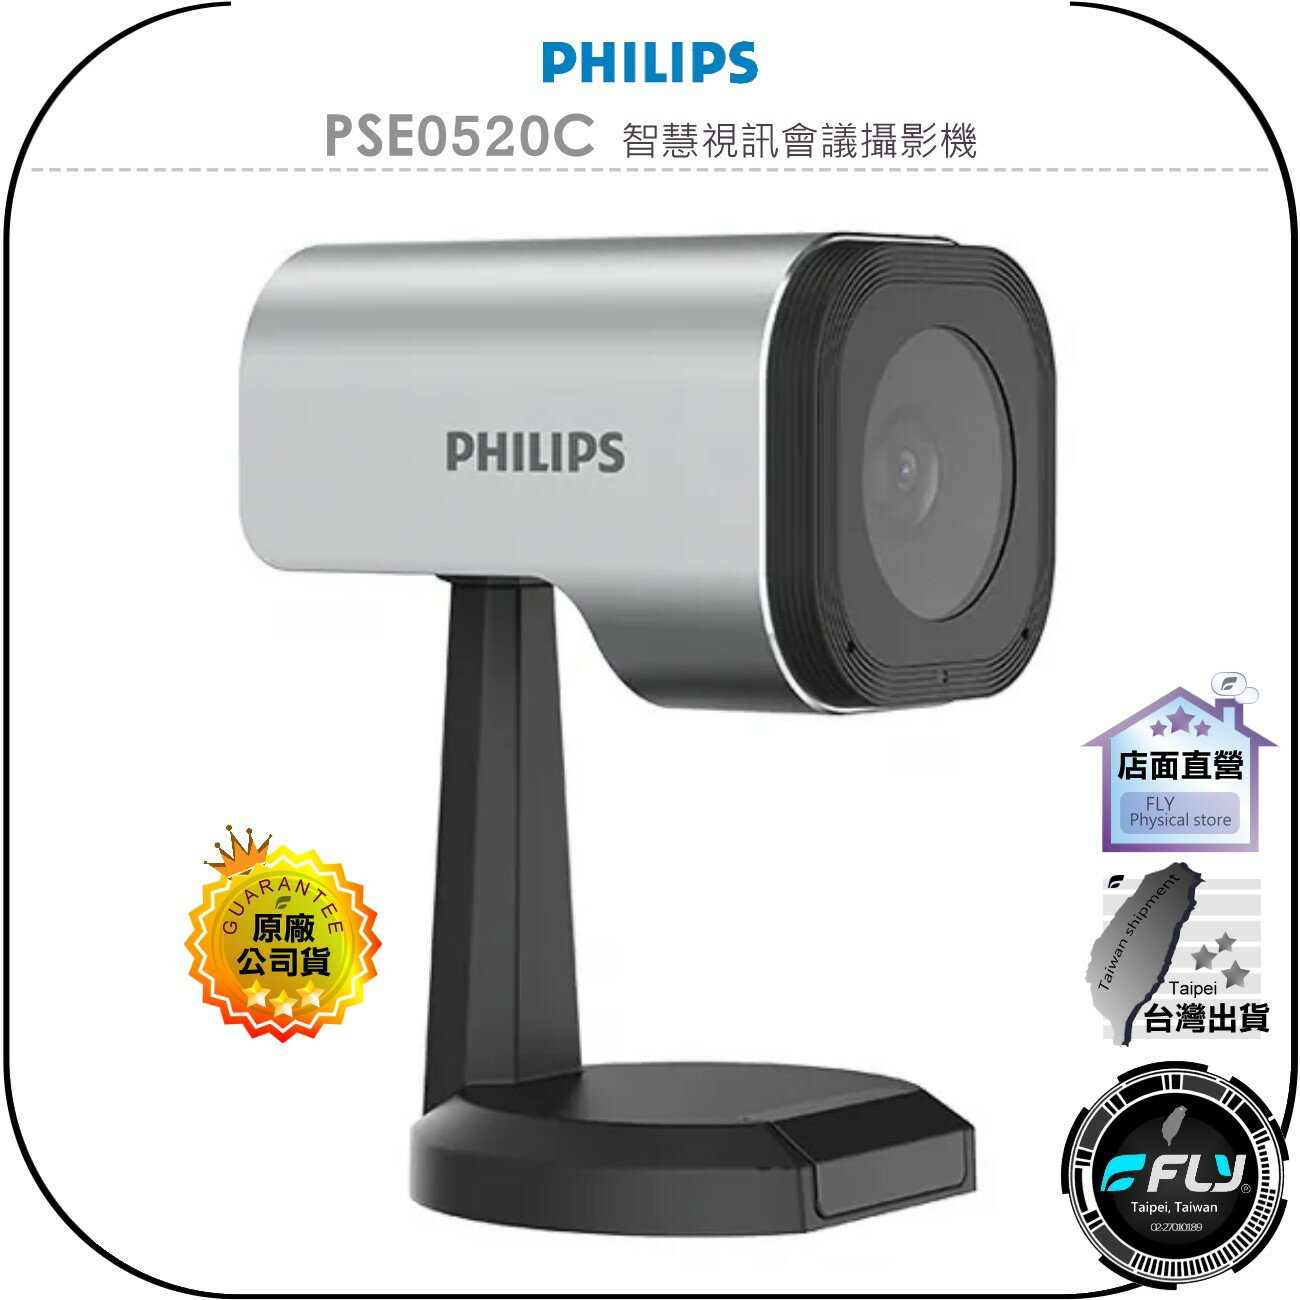 【飛翔商城】PHILIPS 飛利浦 PSE0520C 智慧視訊會議攝影機◉公司貨◉USB連接◉1080P◉對話流暢